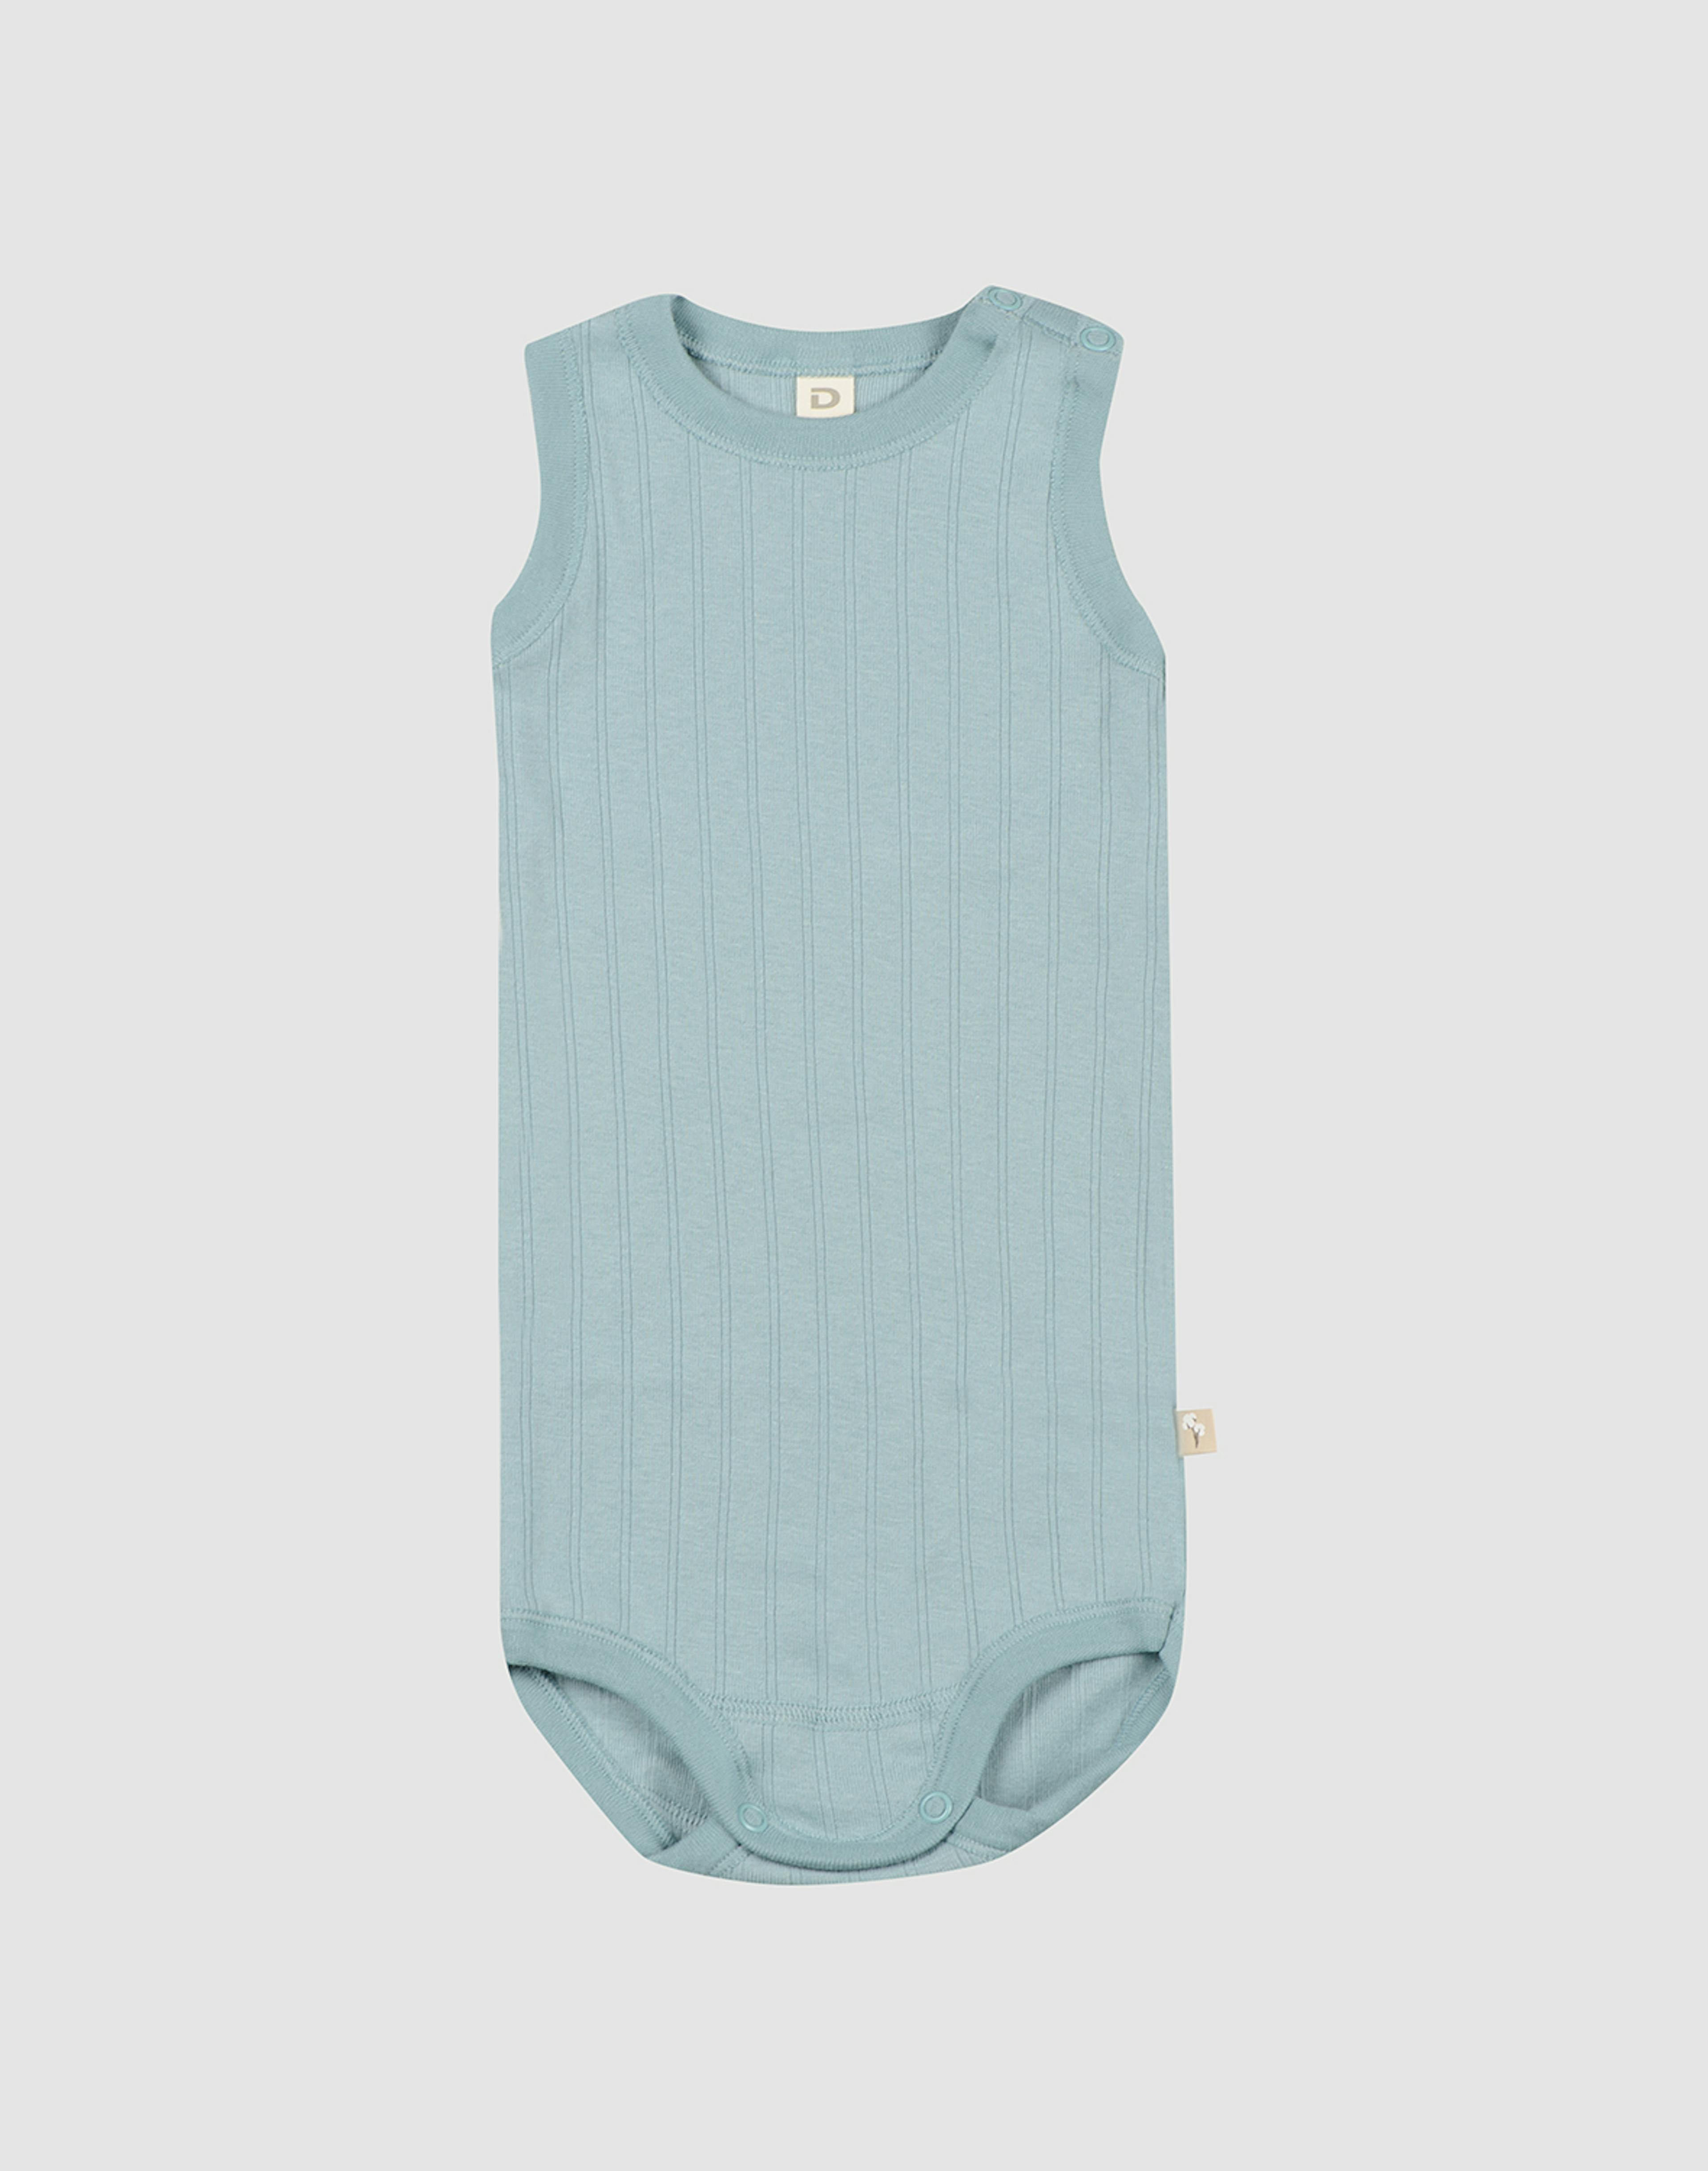 Baby Bodysuits & Singlets, Merino & Cotton